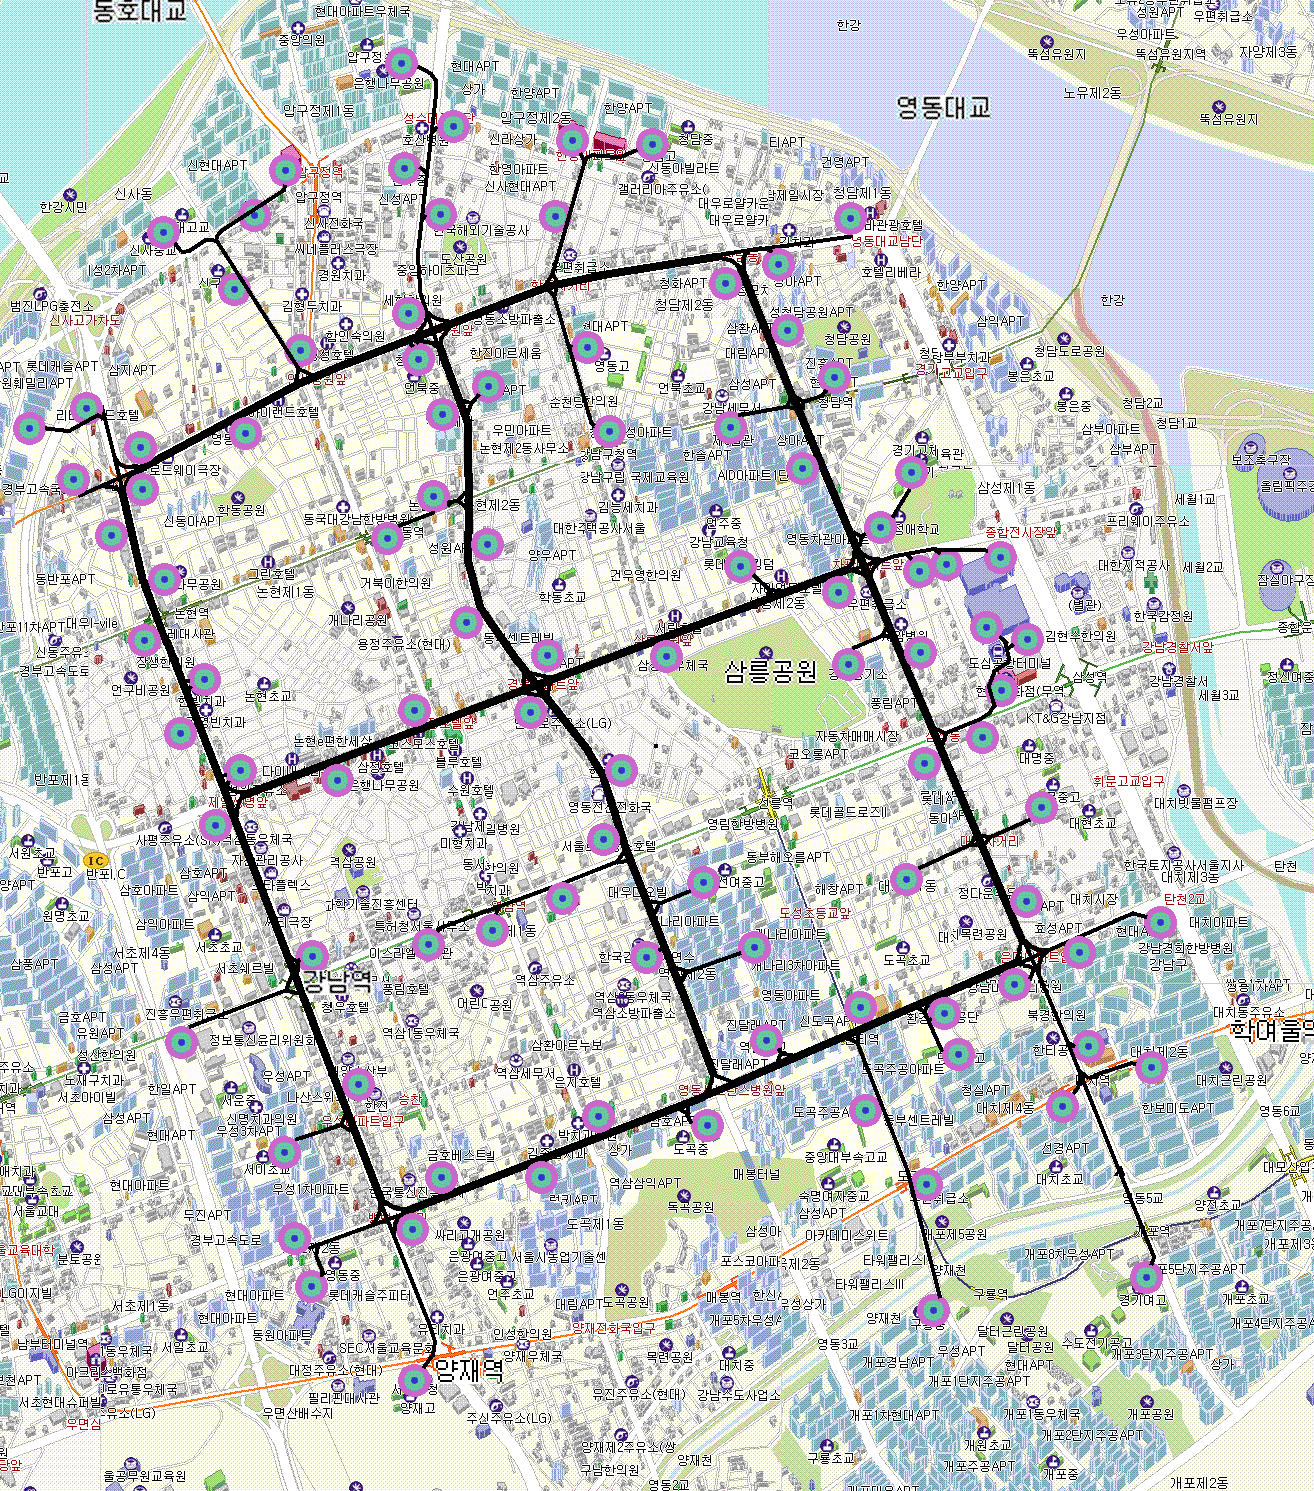 South Seoul Plan